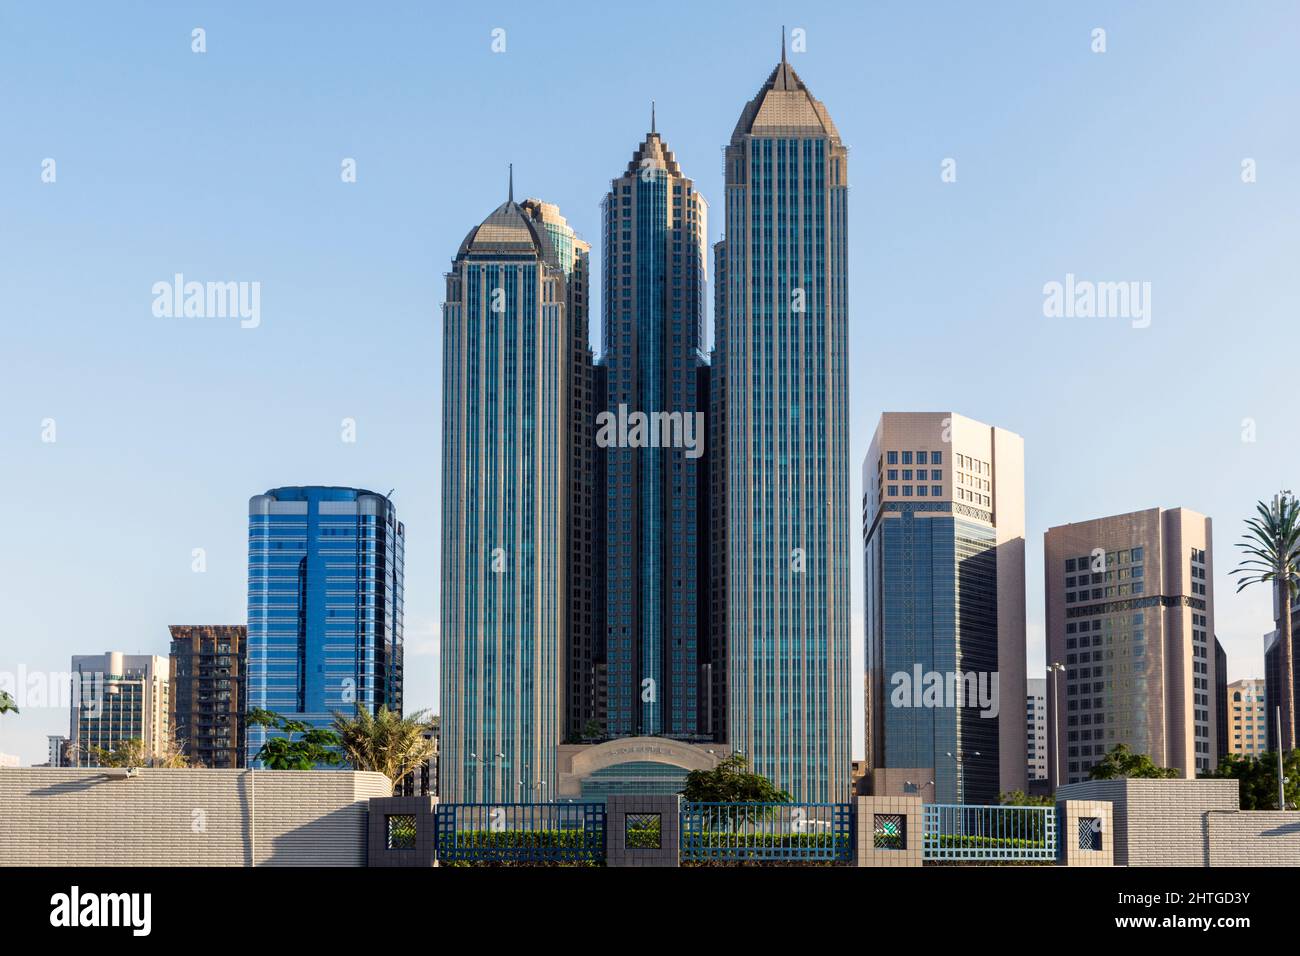 Sofitel Hotel in Abu Dhabi, United Arab Emirates Stock Photo